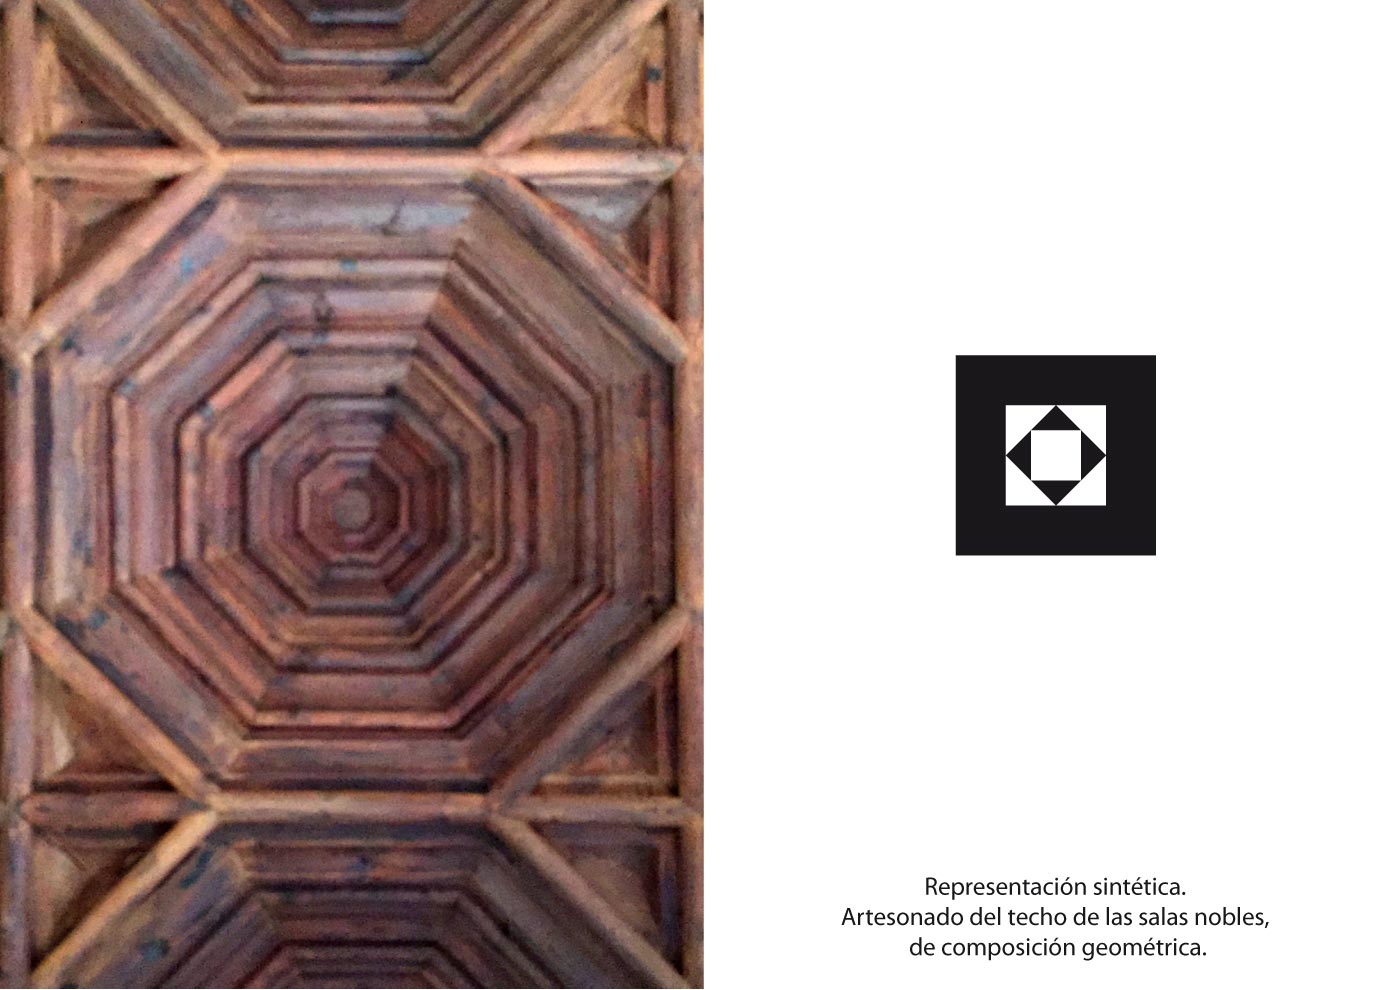 Centenario Castillo de alaquas artesonado madera